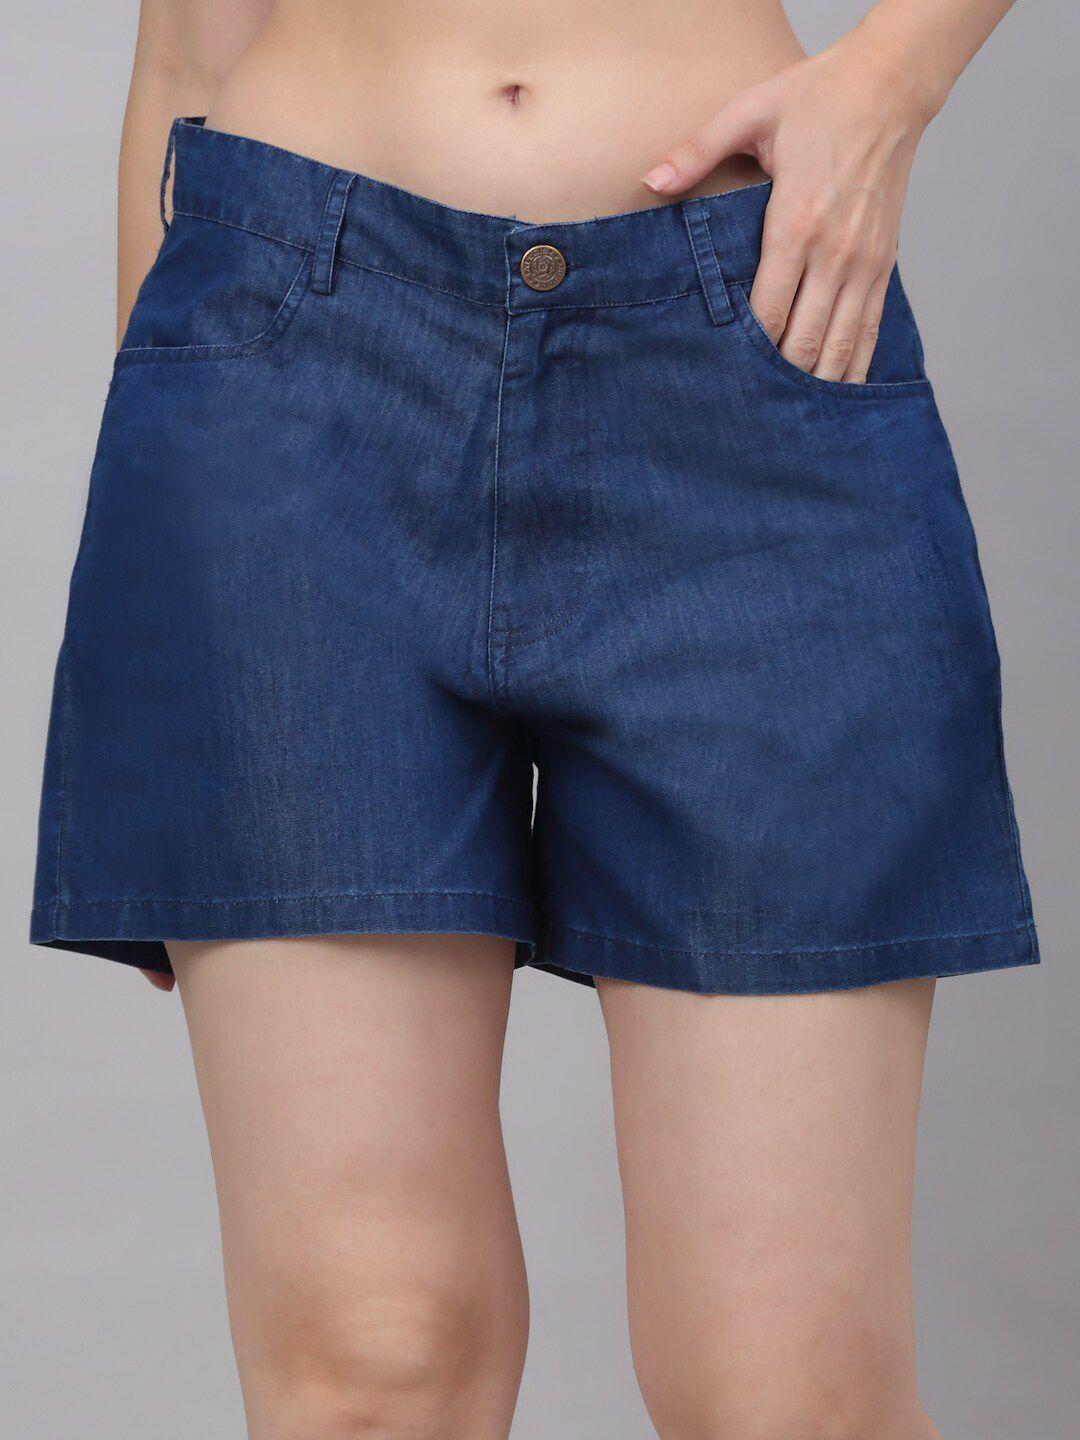 NEUDIS Women Outdoor Denim Shorts